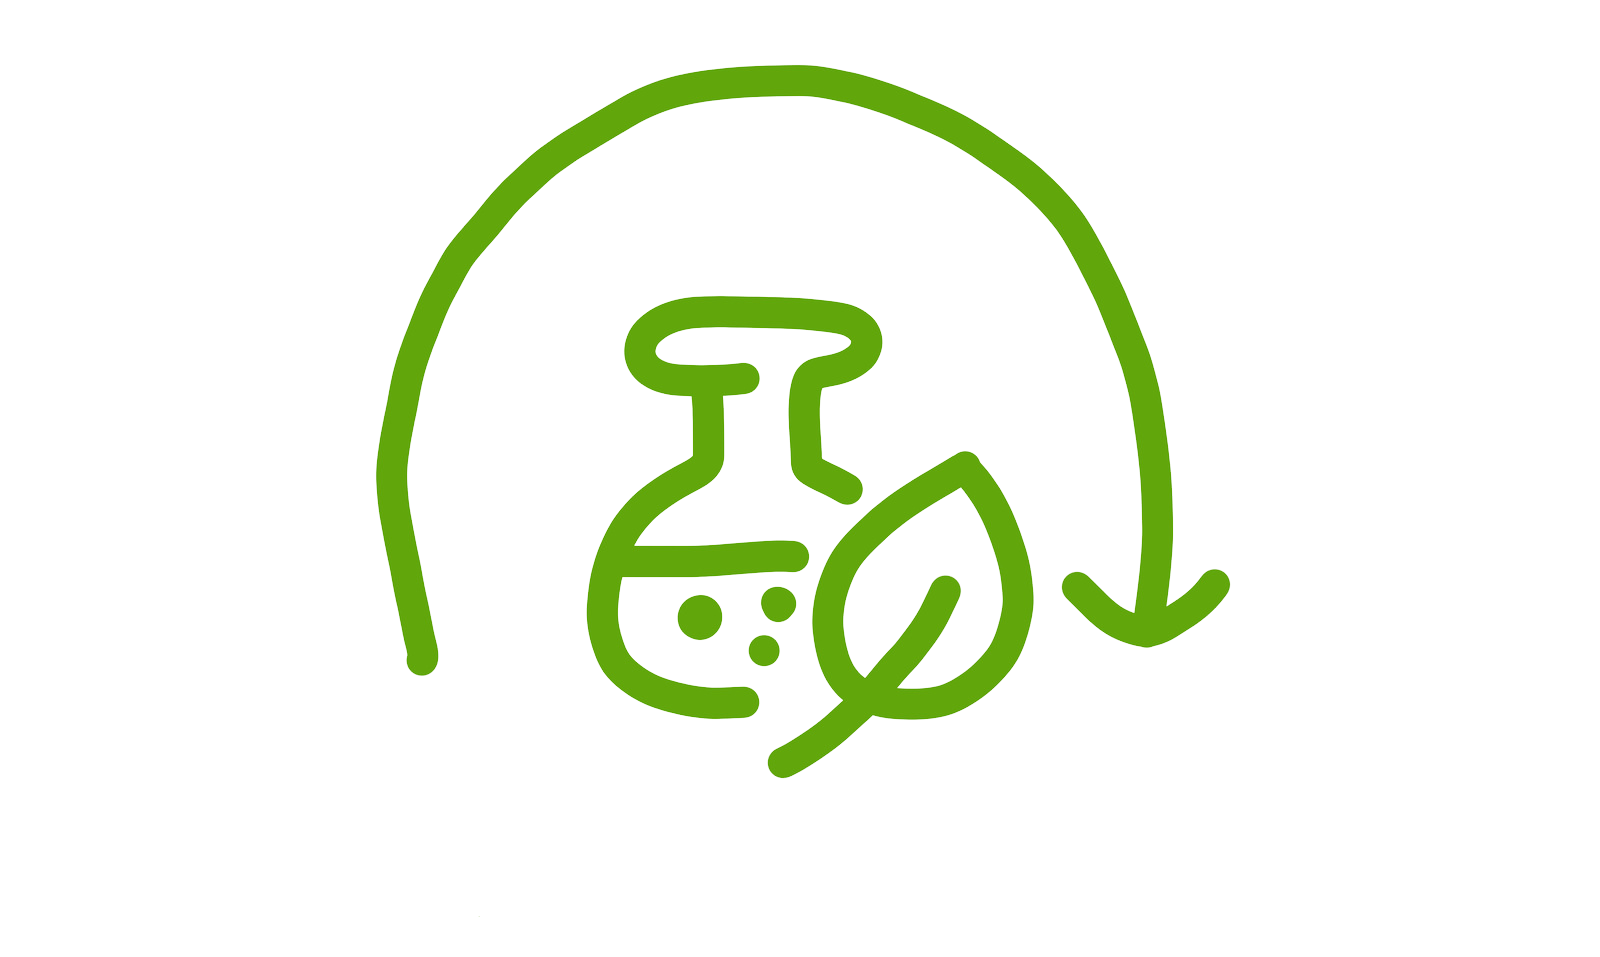 Une icône illustrée montre une flèche qui forme un demi-cercle autour des mots "All Clean", apparaissant à côté d